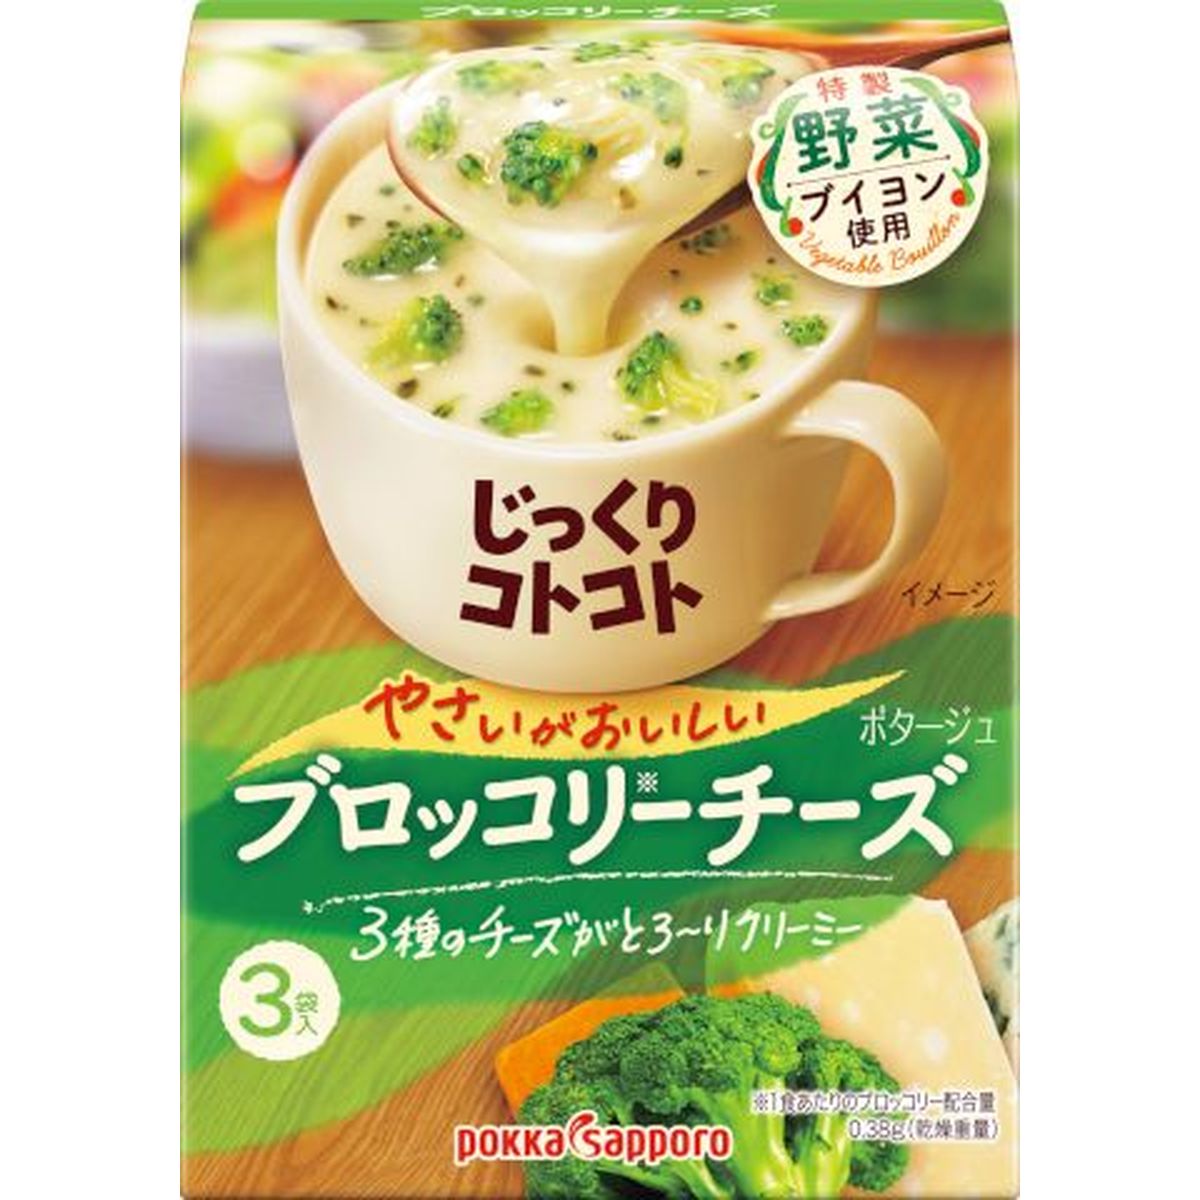 【5個入リ】ポッカサッポロ ジックリコトコトヤサイブロックチーズ 56.4g